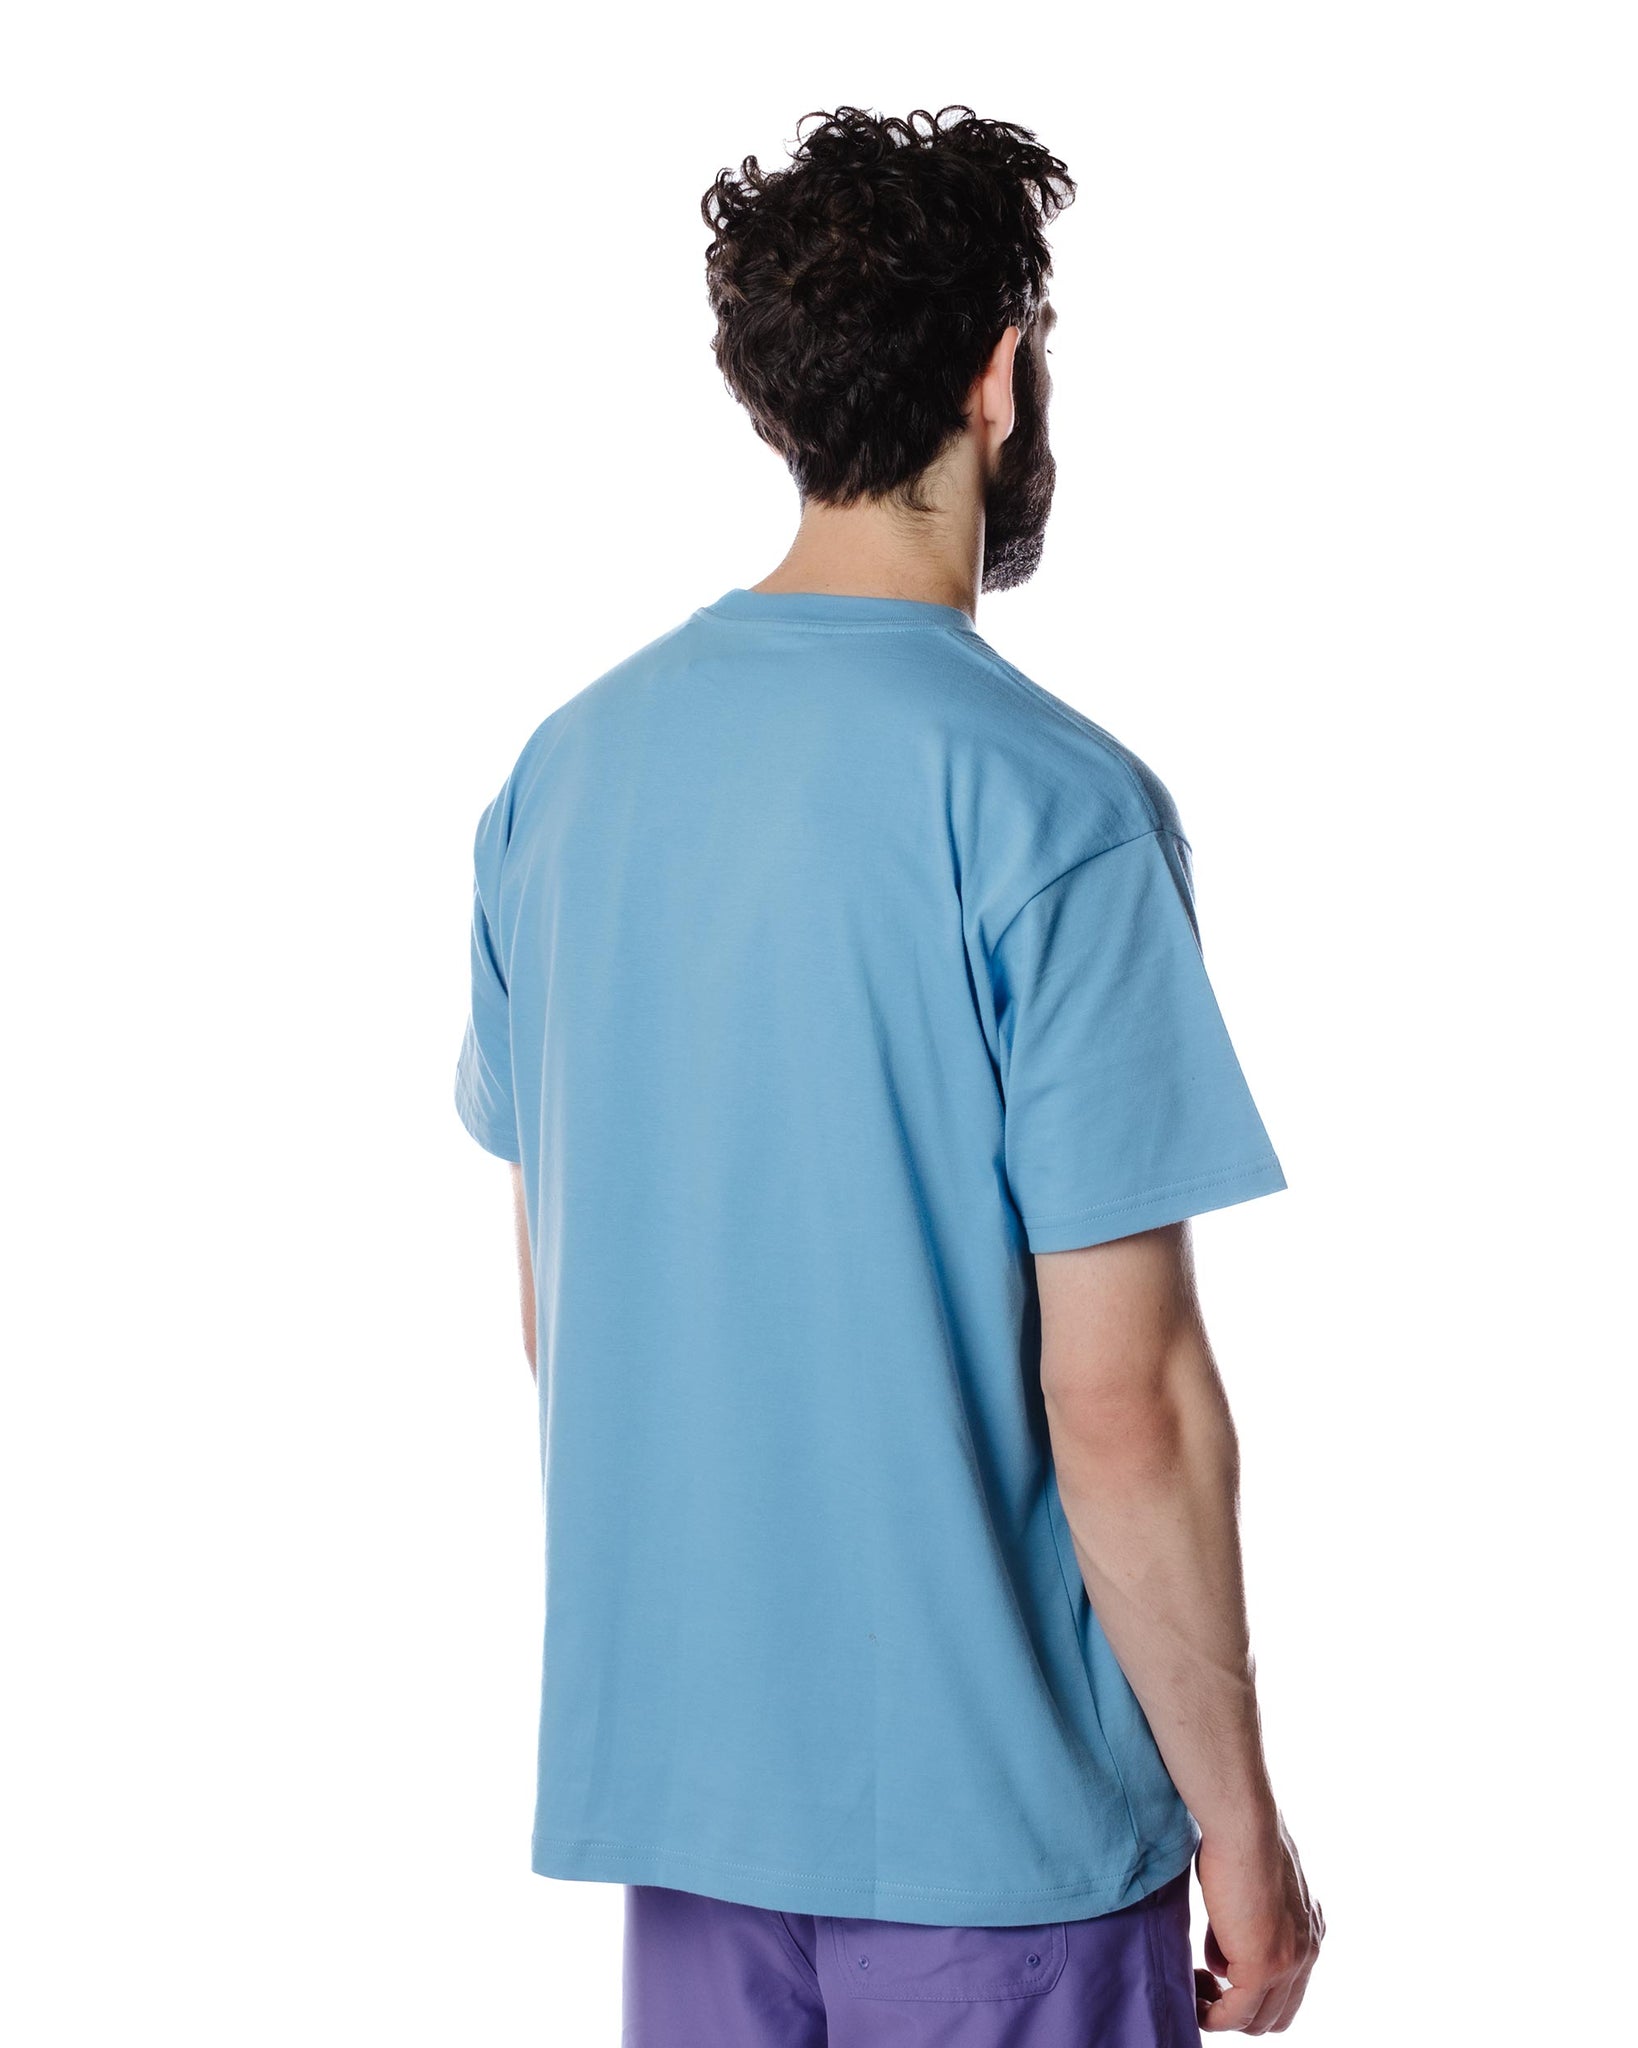 Carhartt W.I.P. Vacanze Short Sleeve T-Shirt Piscine Model Rear